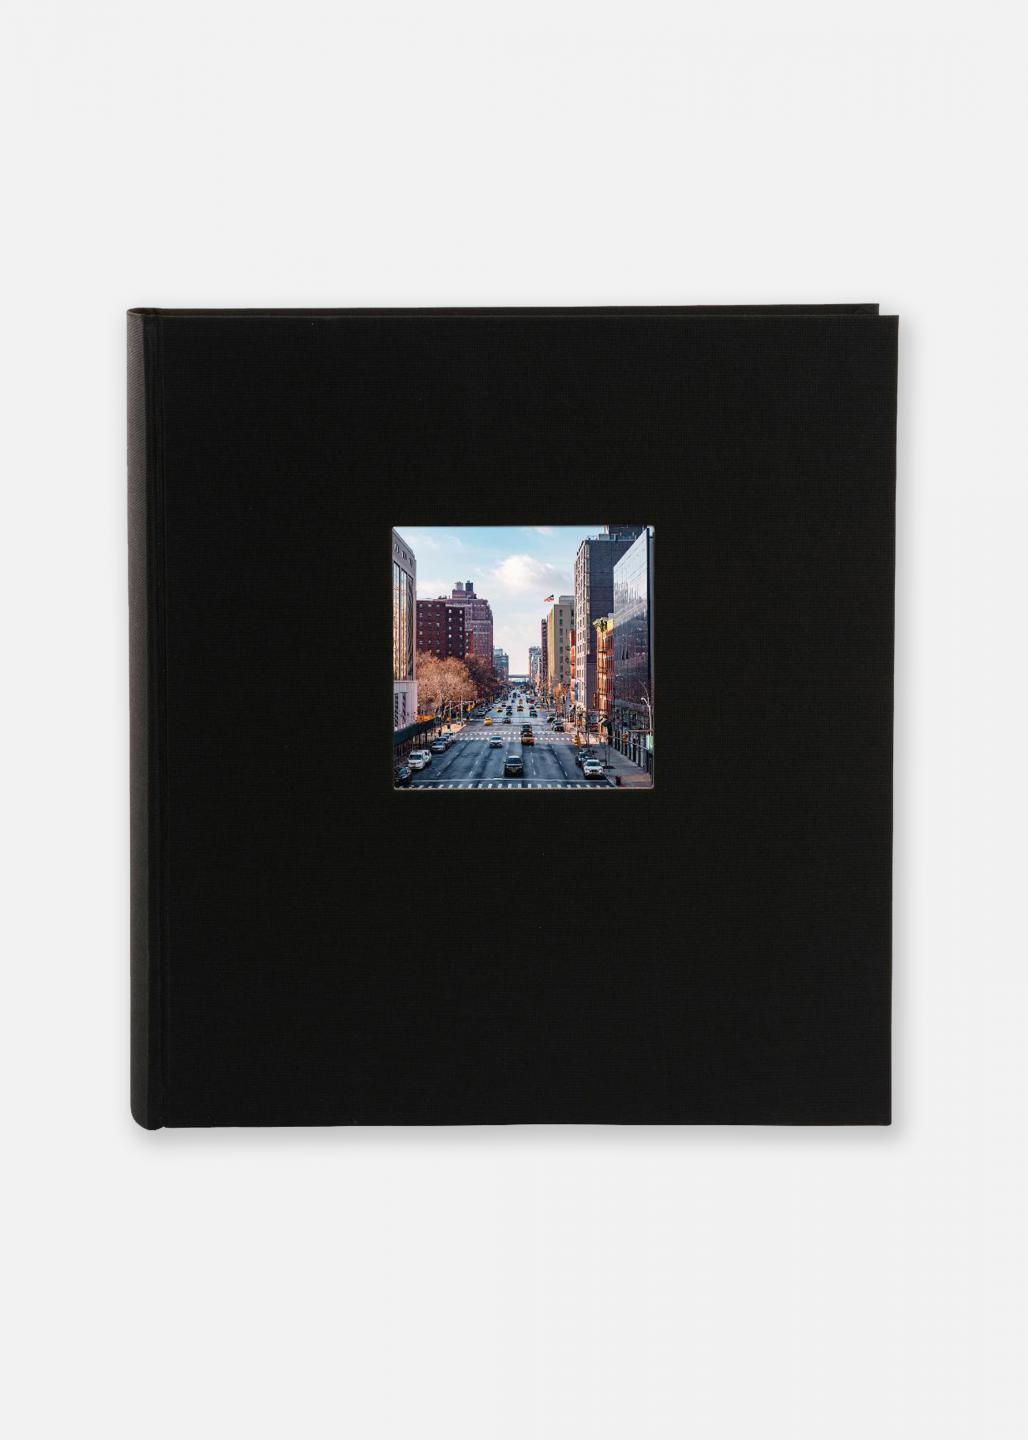 SecaDesign Album Photo Vita noir - 30x30 - 100 pages - Album photo